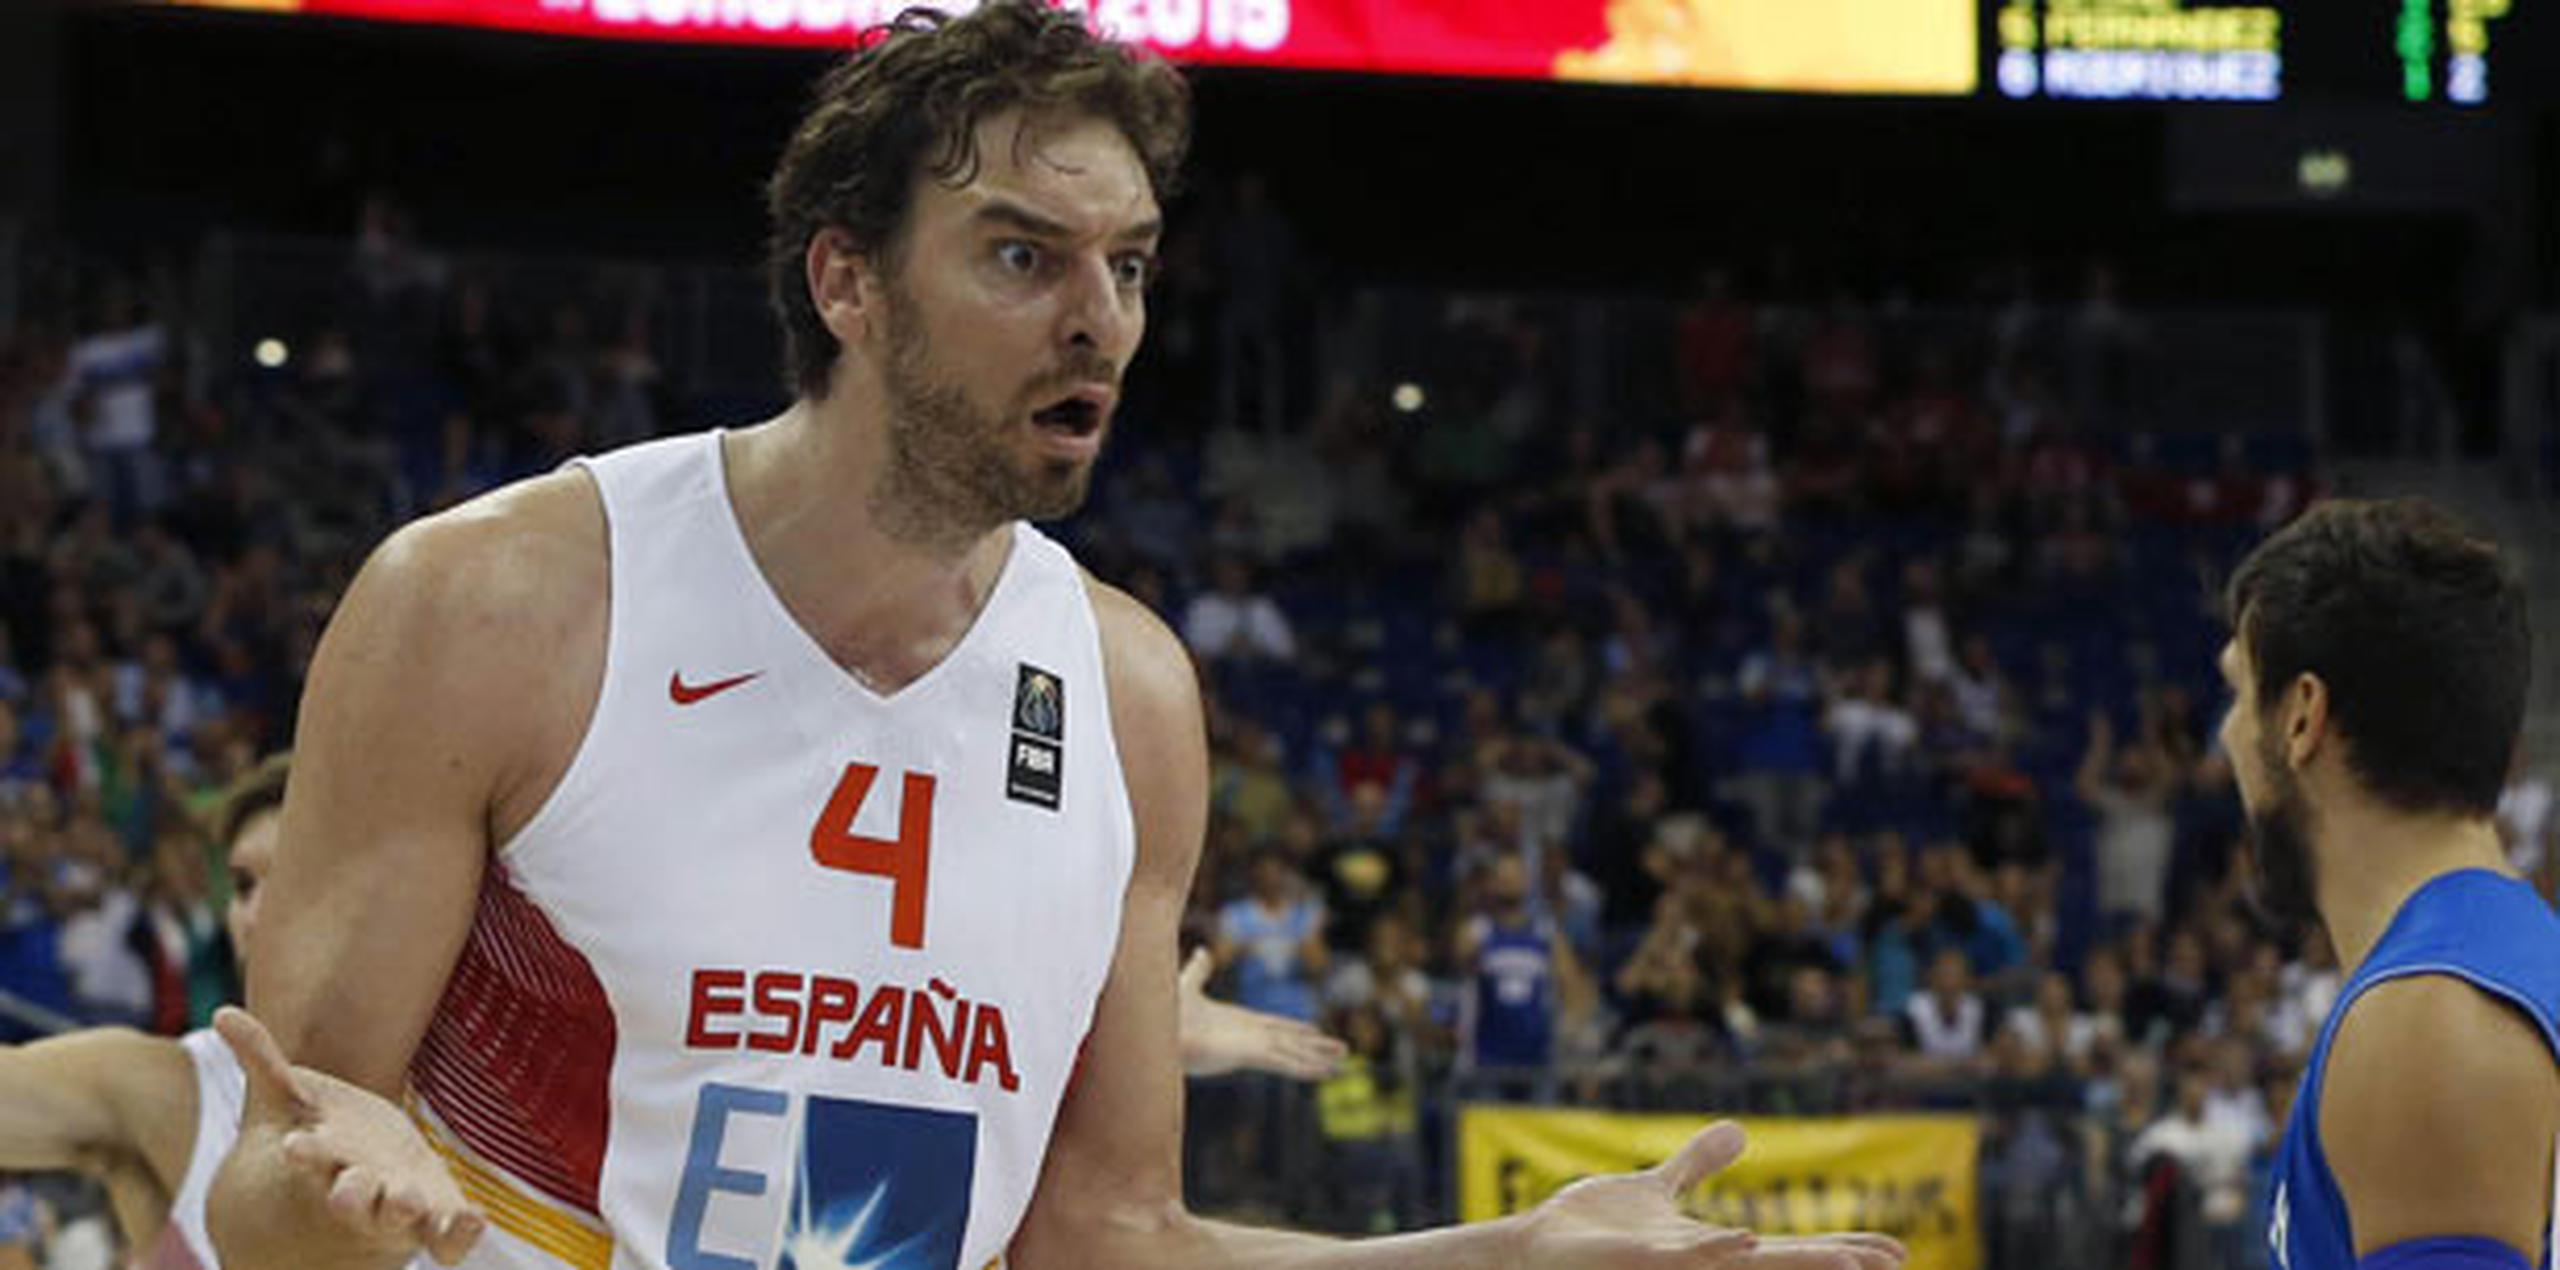 La siempre favorita España la ha tenido difícil en el inicio del Eurobasket al acumular marca de 1-2 en sus primeros encuentros. (EFE / Juan Carlos Hidalgo)